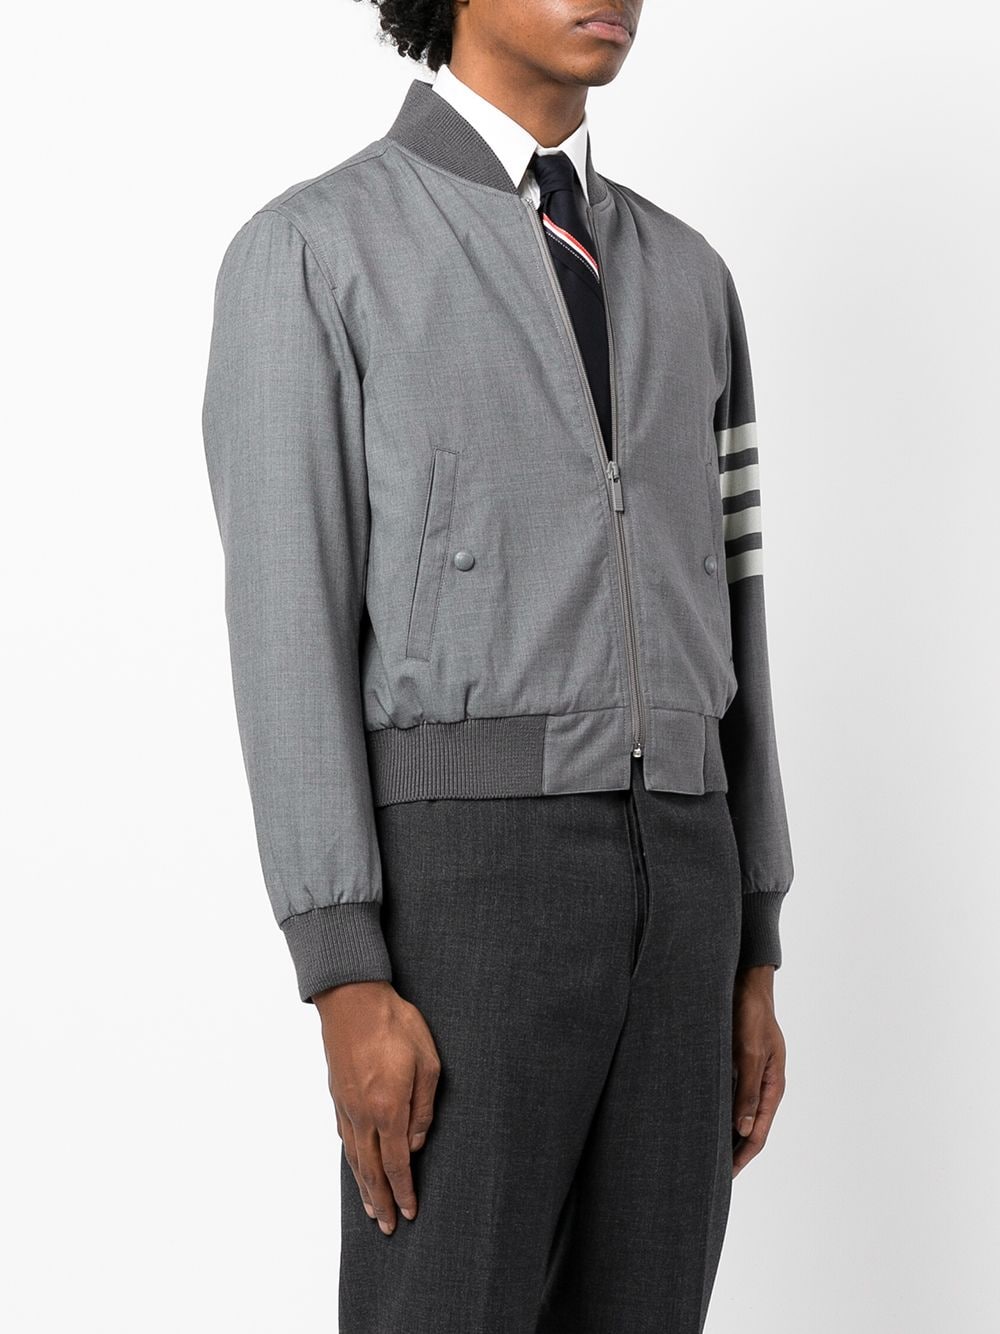 Thom Browne Men's Button Up Blouson Jacket